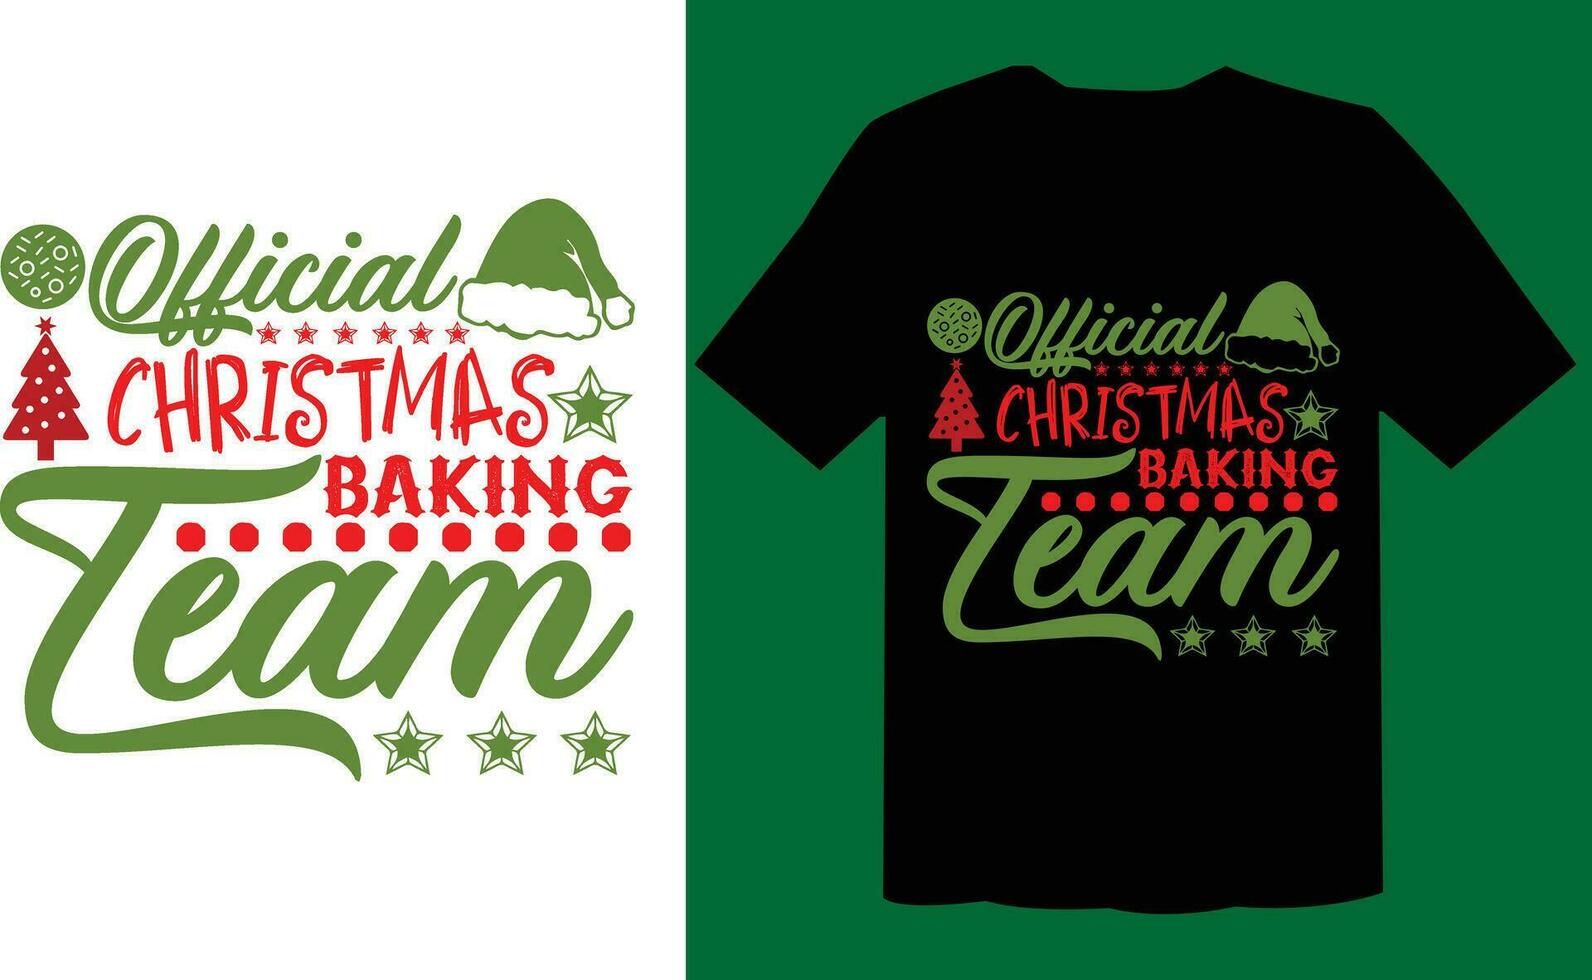 officieel Kerstmis bakken team t overhemd ontwerp vector